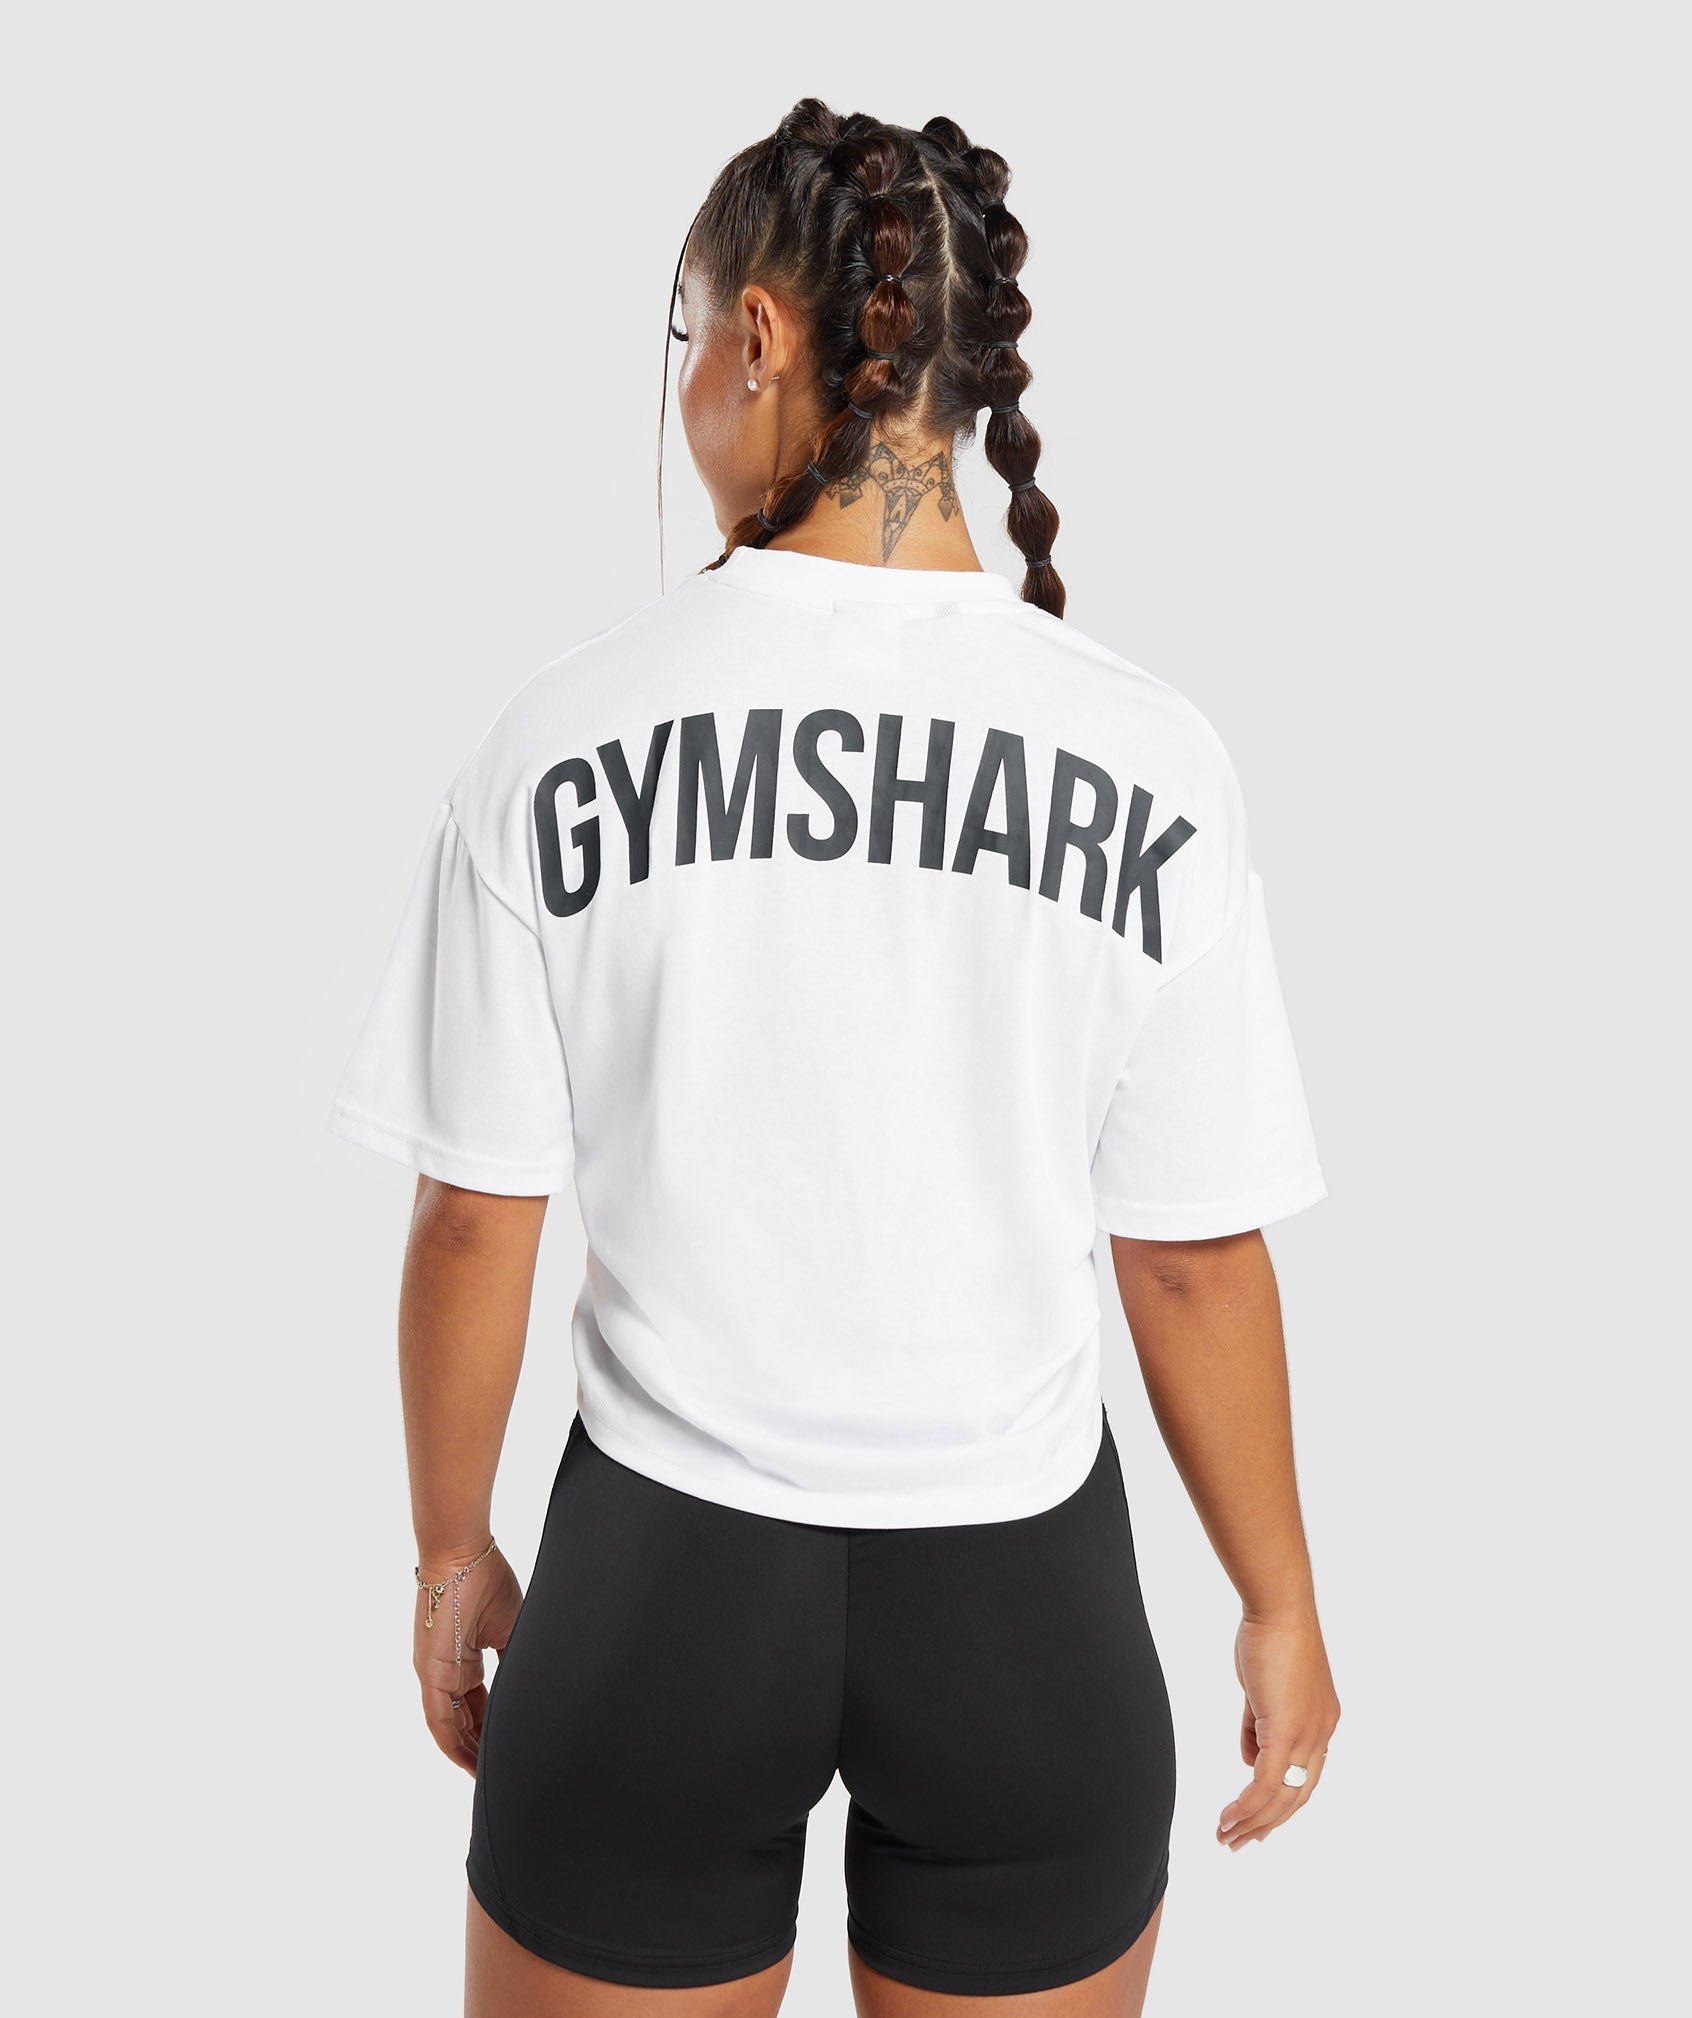 Gymshark T Shirt Homme À VENDRE! - PicClick FR